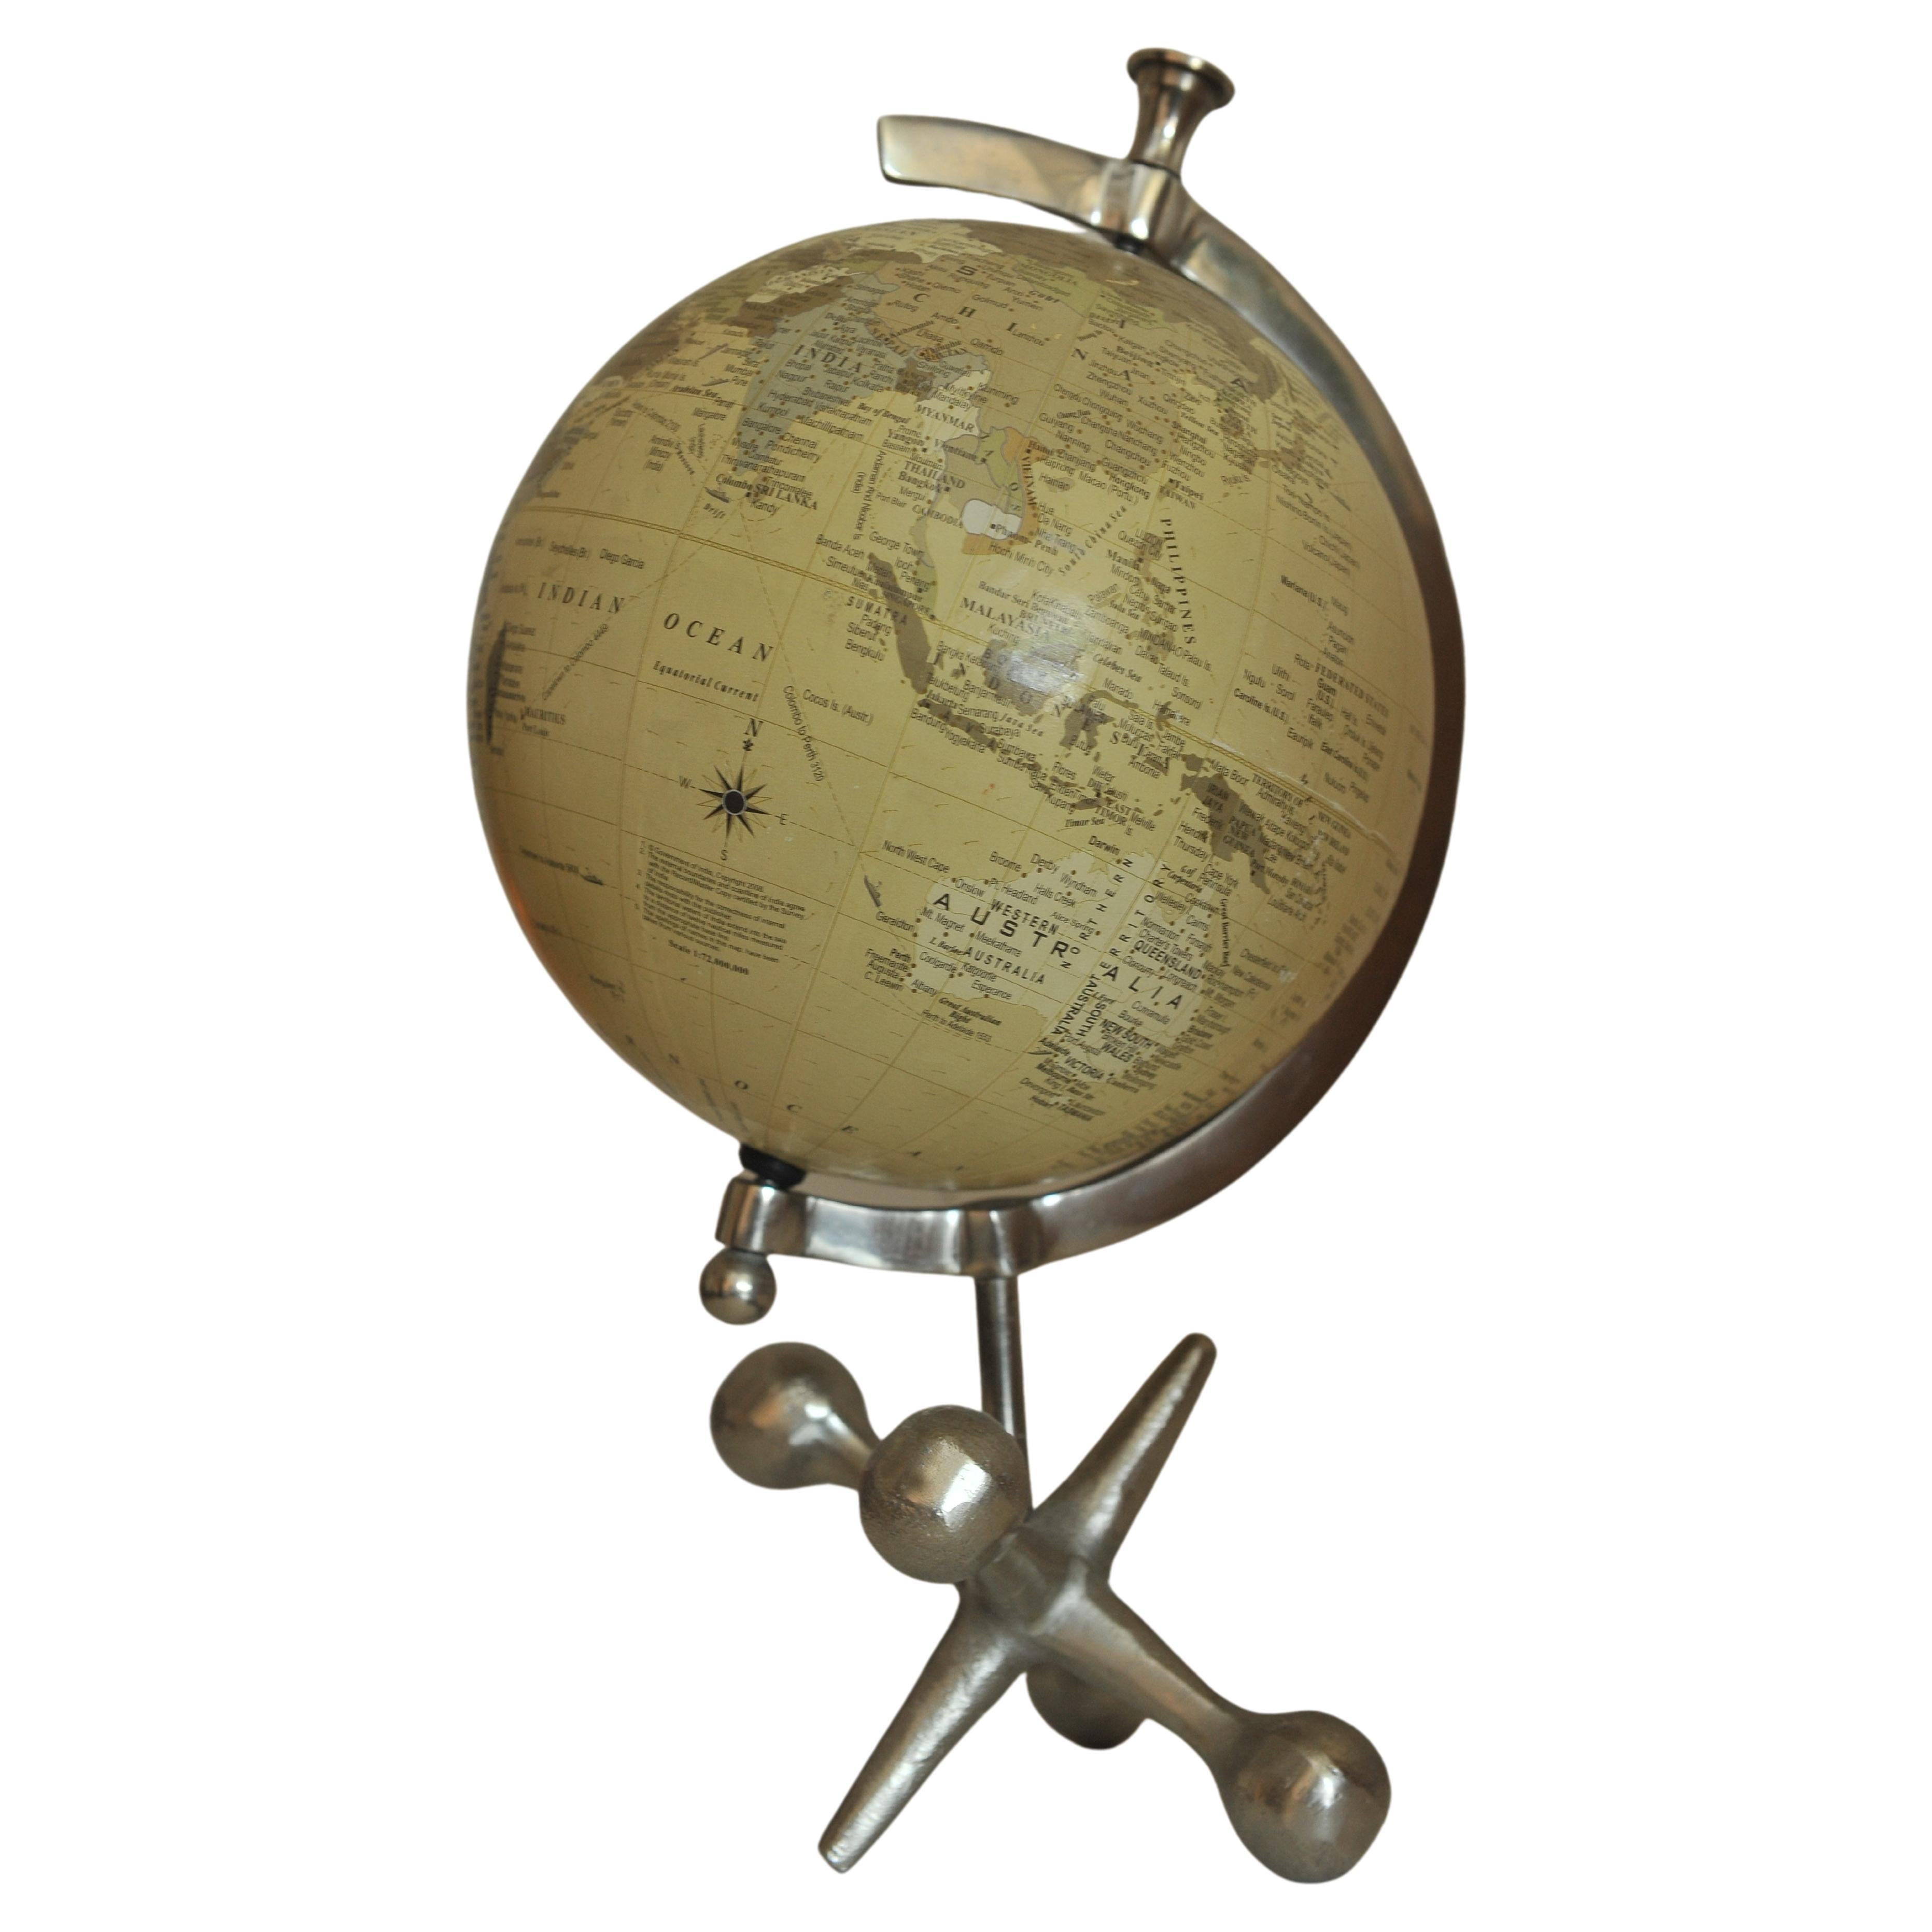 Globe terrestre rotatif sur une base en métal.
Idéal pour le bureau ou l'étude.
